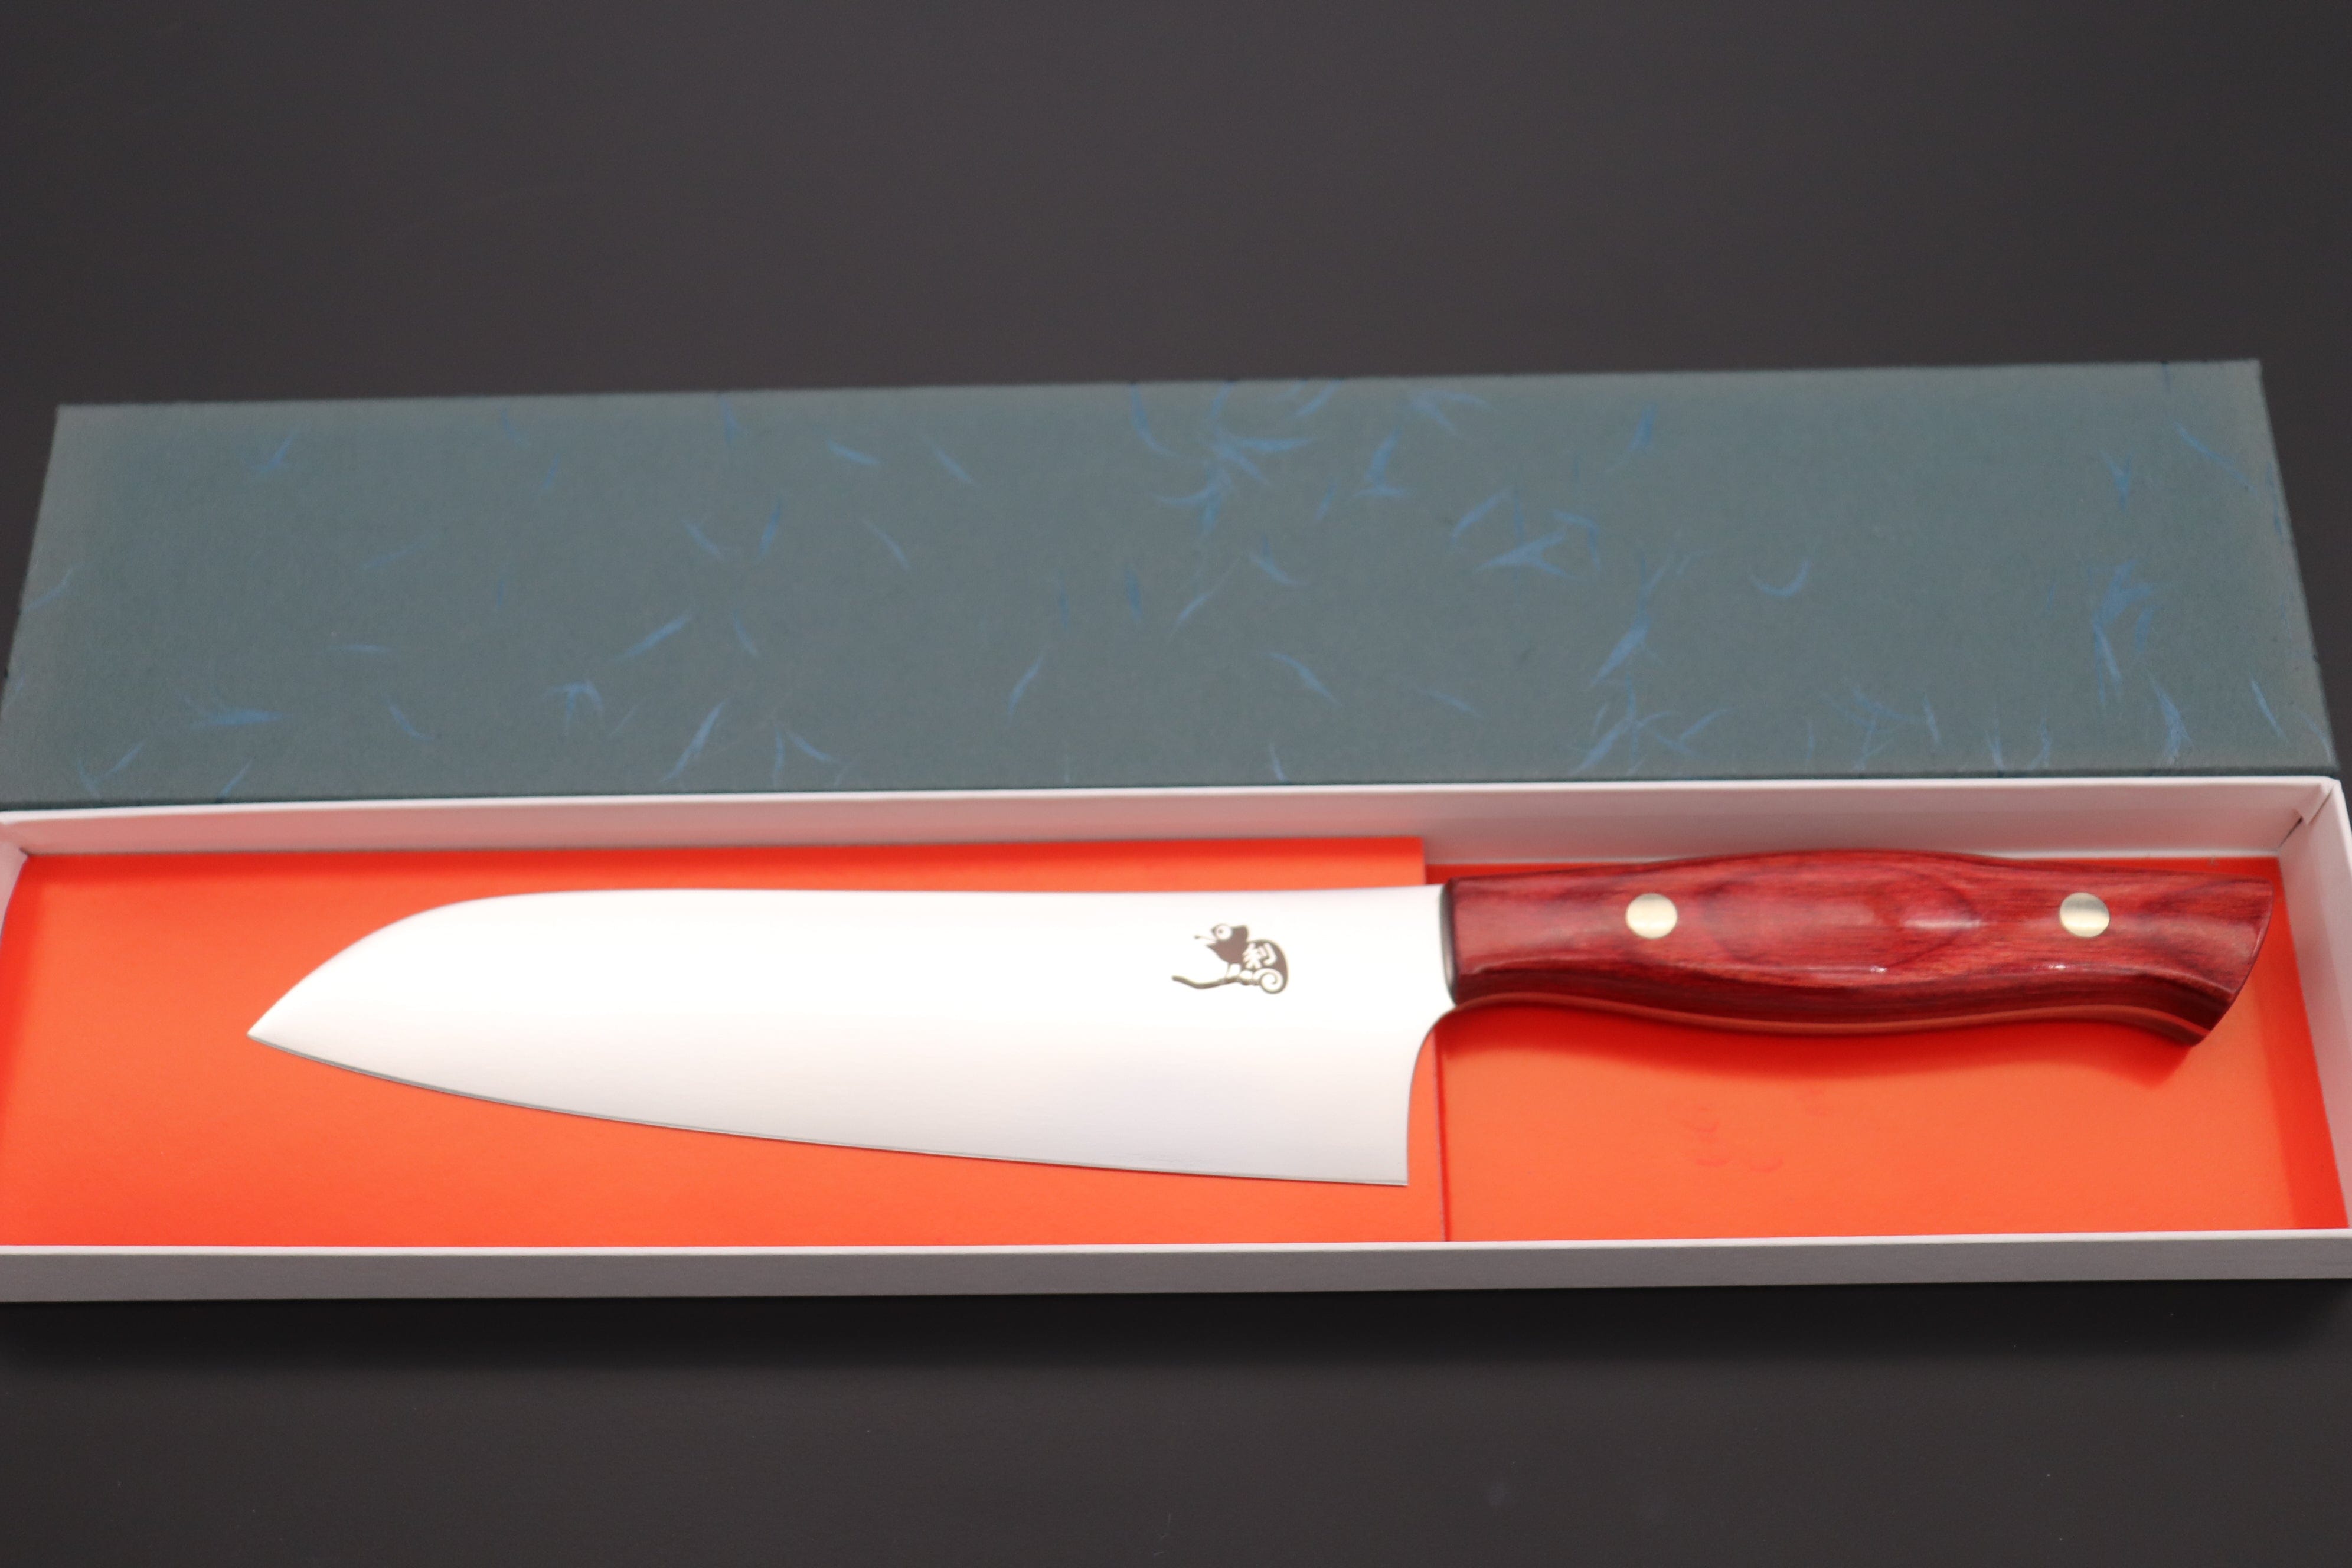 https://japanesechefsknife.com/cdn/shop/files/others-santoku-toshiyuki-takahashi-custom-kitchen-knife-tt-18-santoku-175mm-6-8-inch-43013162271003.jpg?v=1696222310